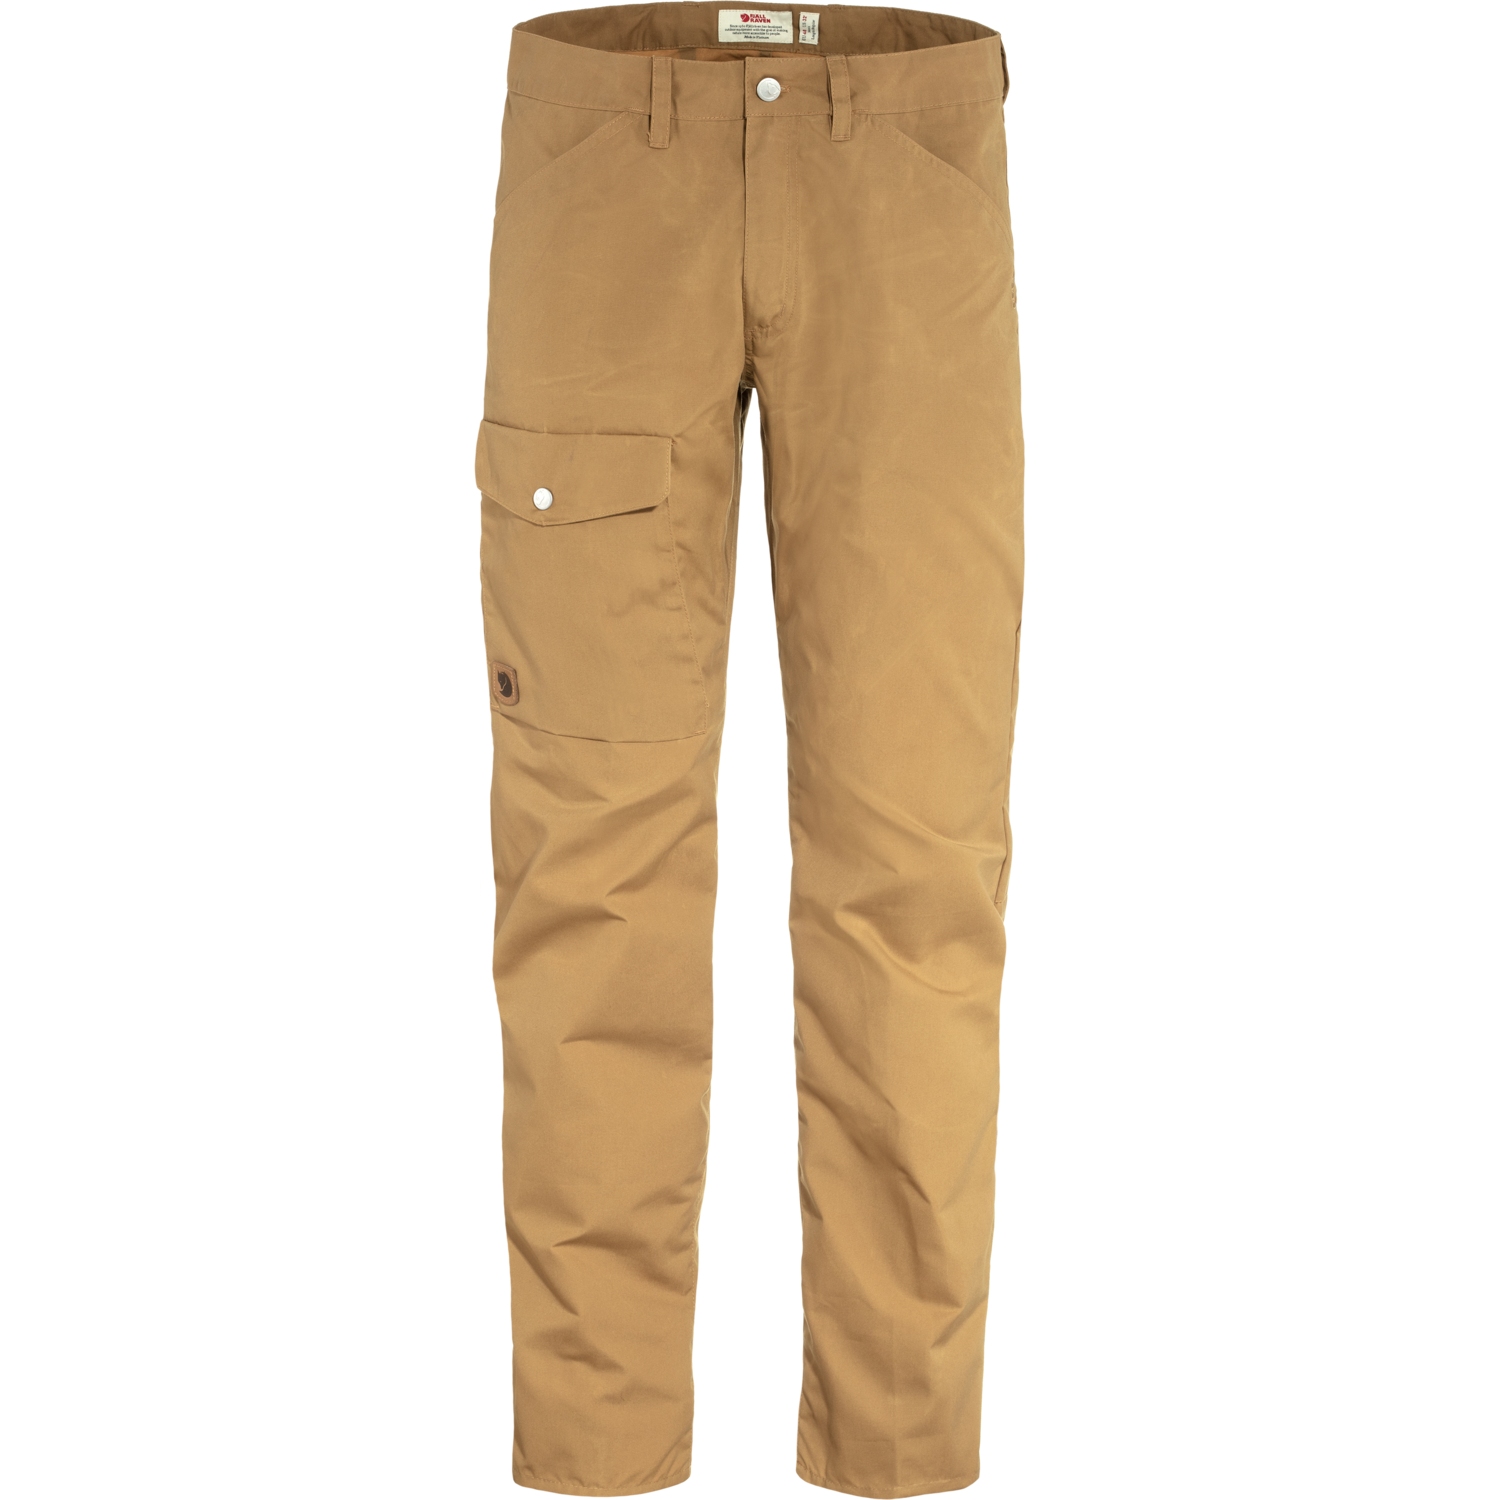 Produktbild von Fjällräven Greenland Jeans Herren - Lang - buckwheat brown